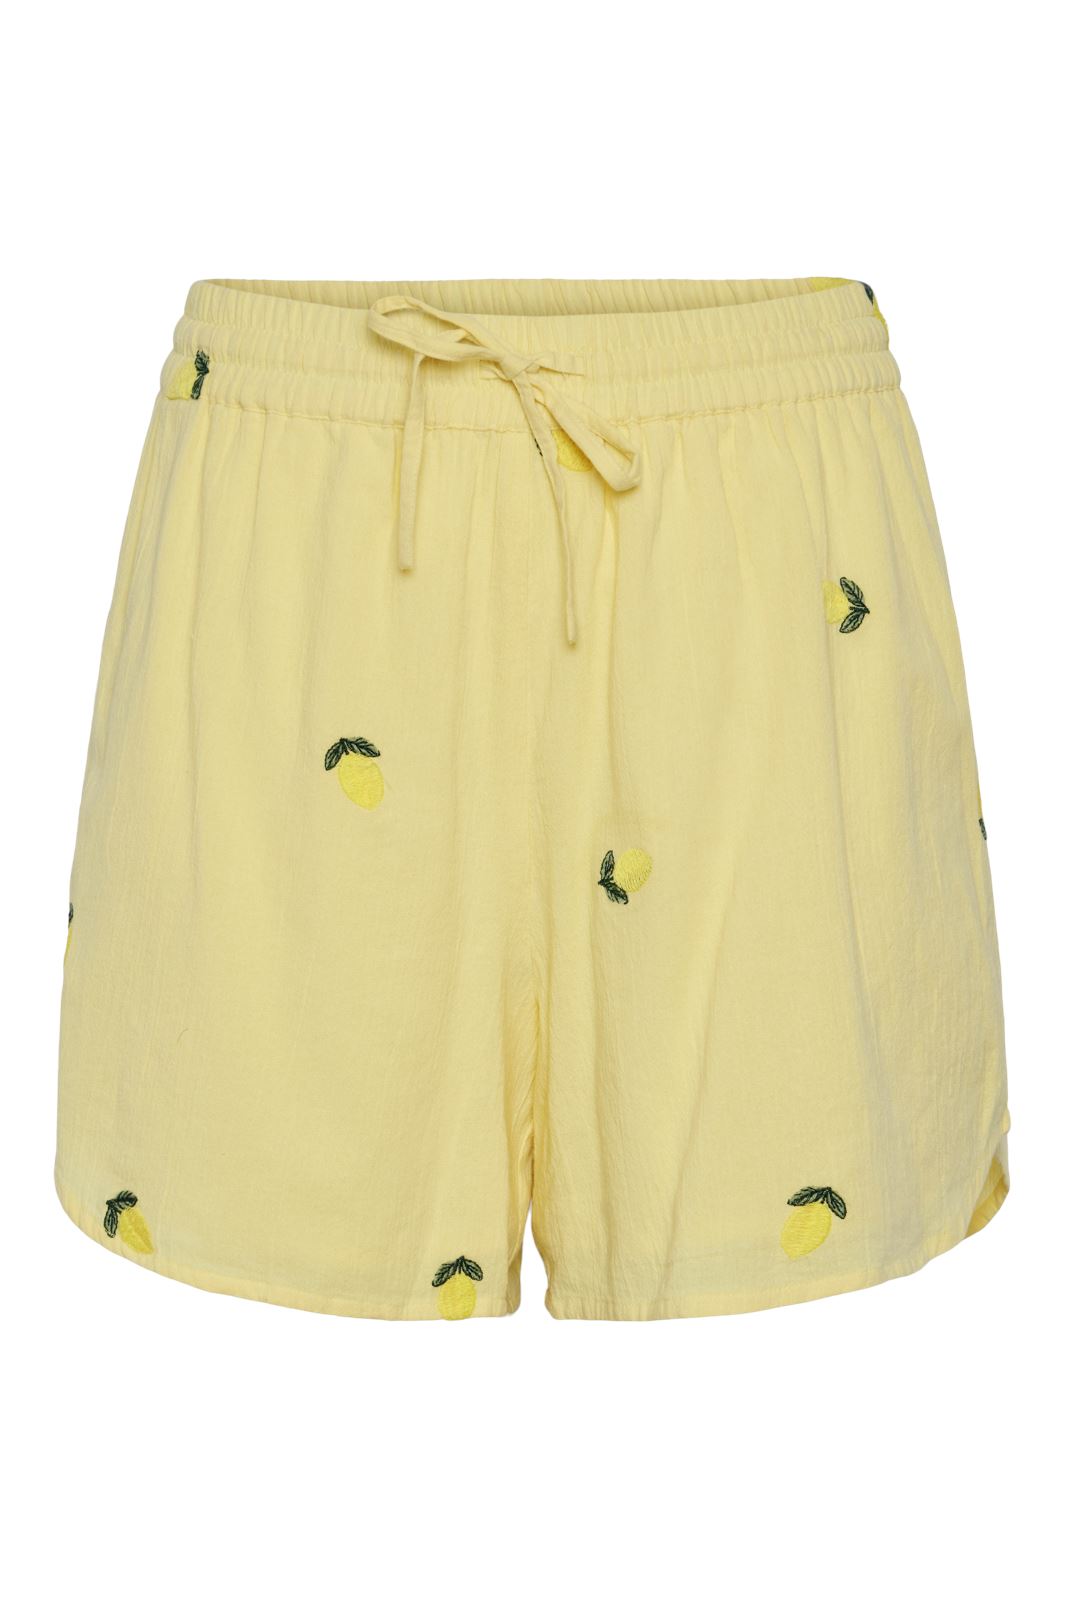 Pieces - Pcselena Shorts - 4625505 Pale Banana Lemons